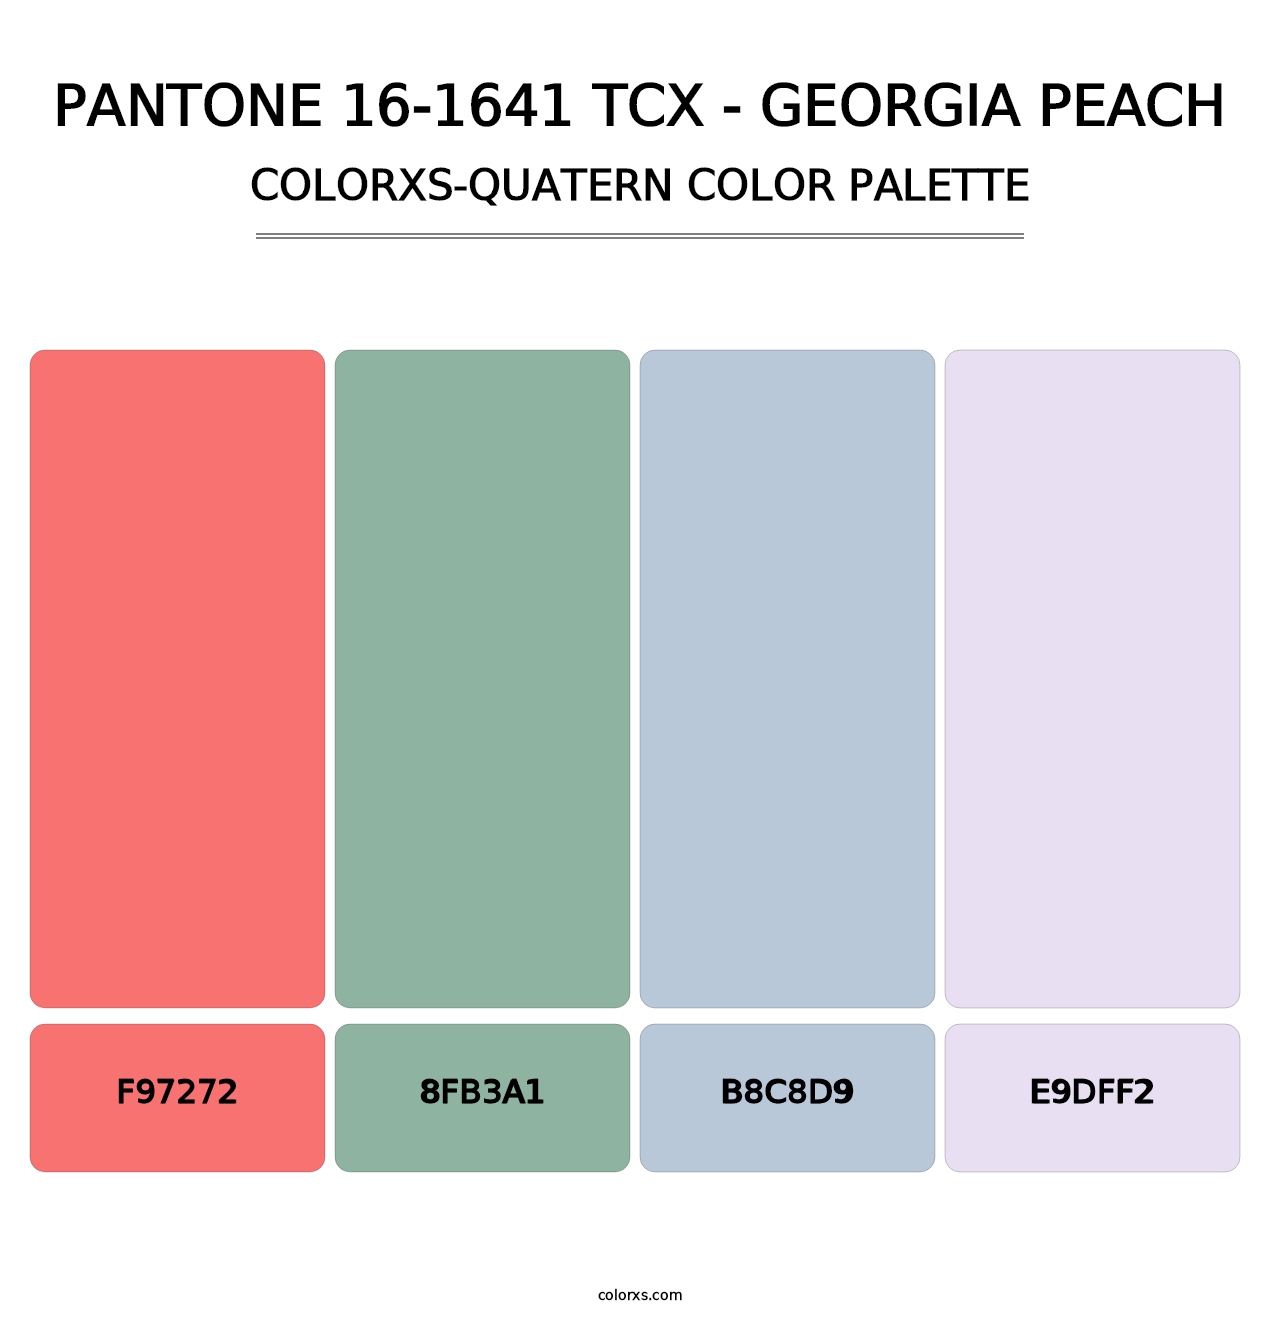 PANTONE 16-1641 TCX - Georgia Peach - Colorxs Quatern Palette